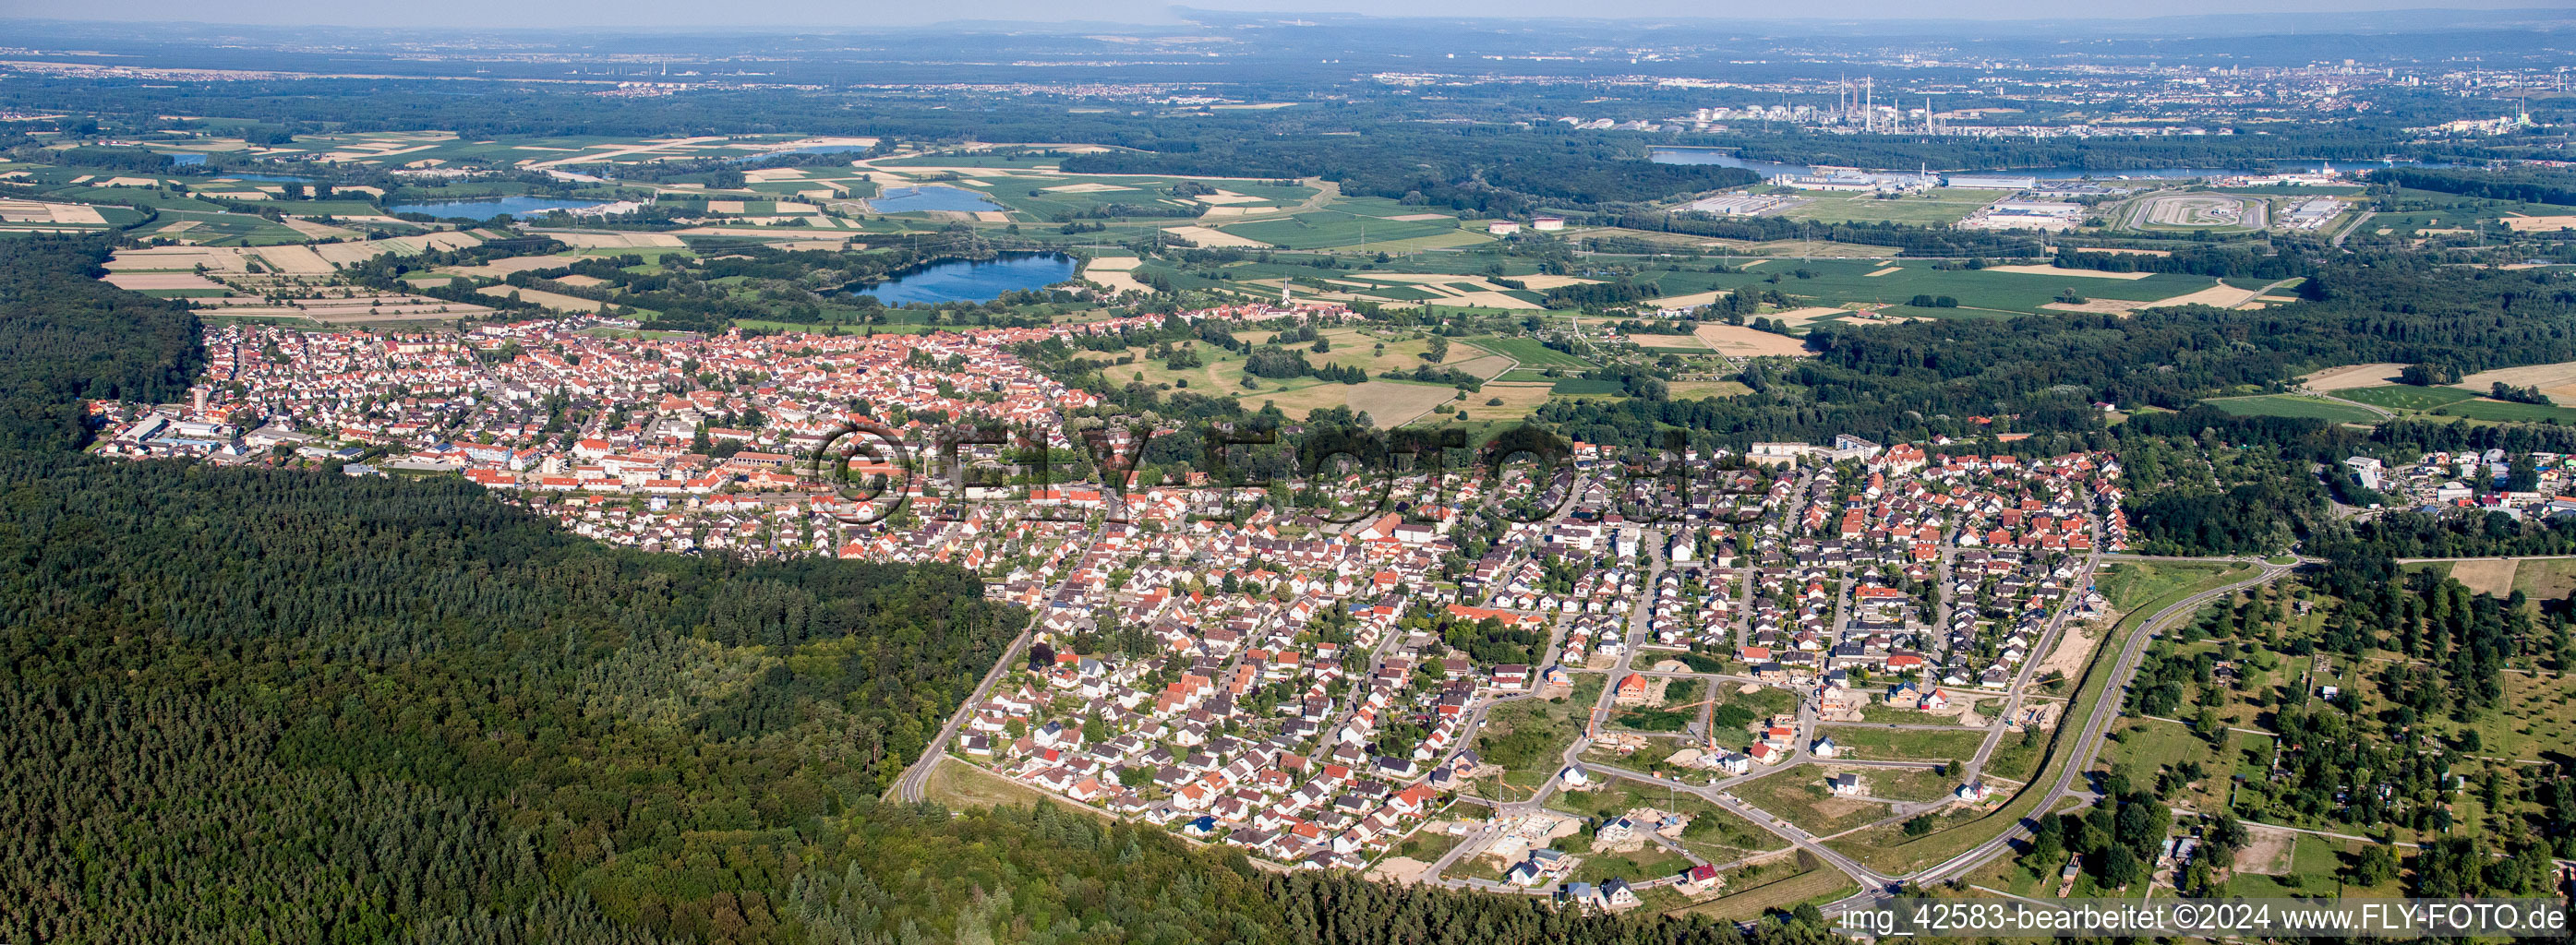 Vue aérienne de Vue panoramique en perspective des rues et des maisons des quartiers résidentiels à Jockgrim dans le département Rhénanie-Palatinat, Allemagne